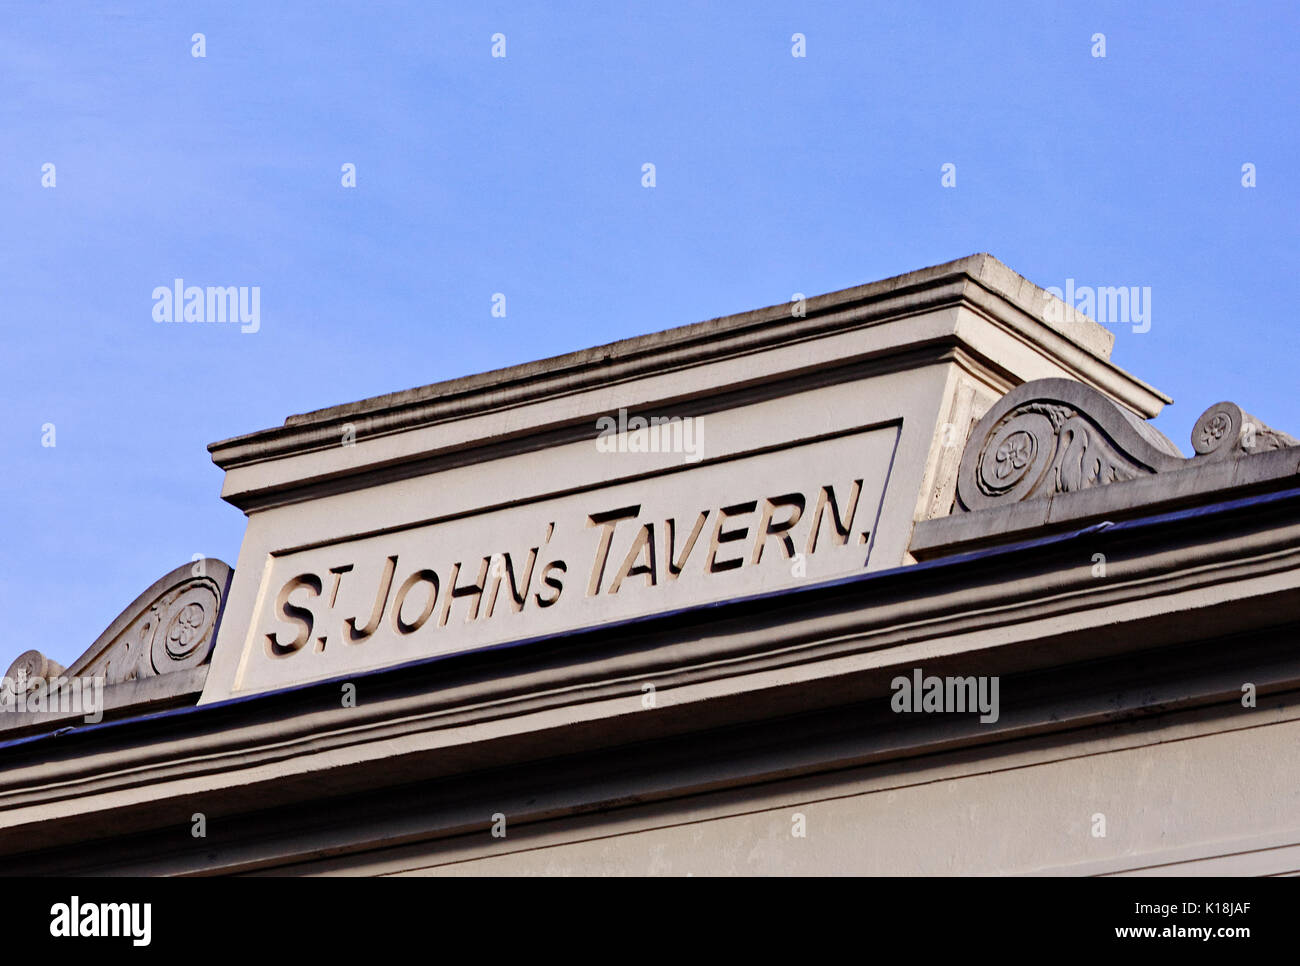 St John's Tavern London Stock Photo